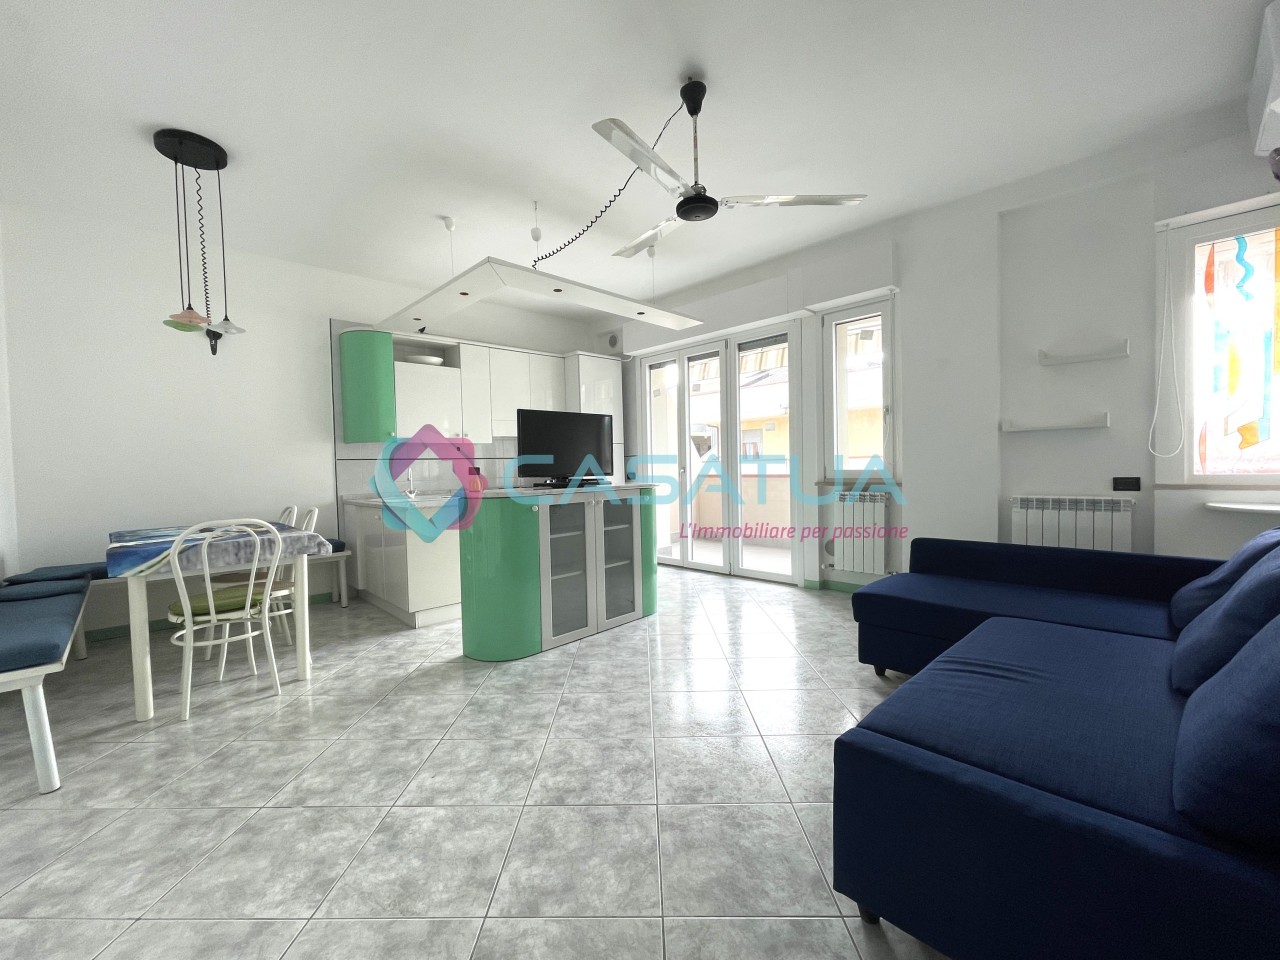 Appartamento in vendita a Alba Adriatica, 4 locali, prezzo € 136.000 | PortaleAgenzieImmobiliari.it